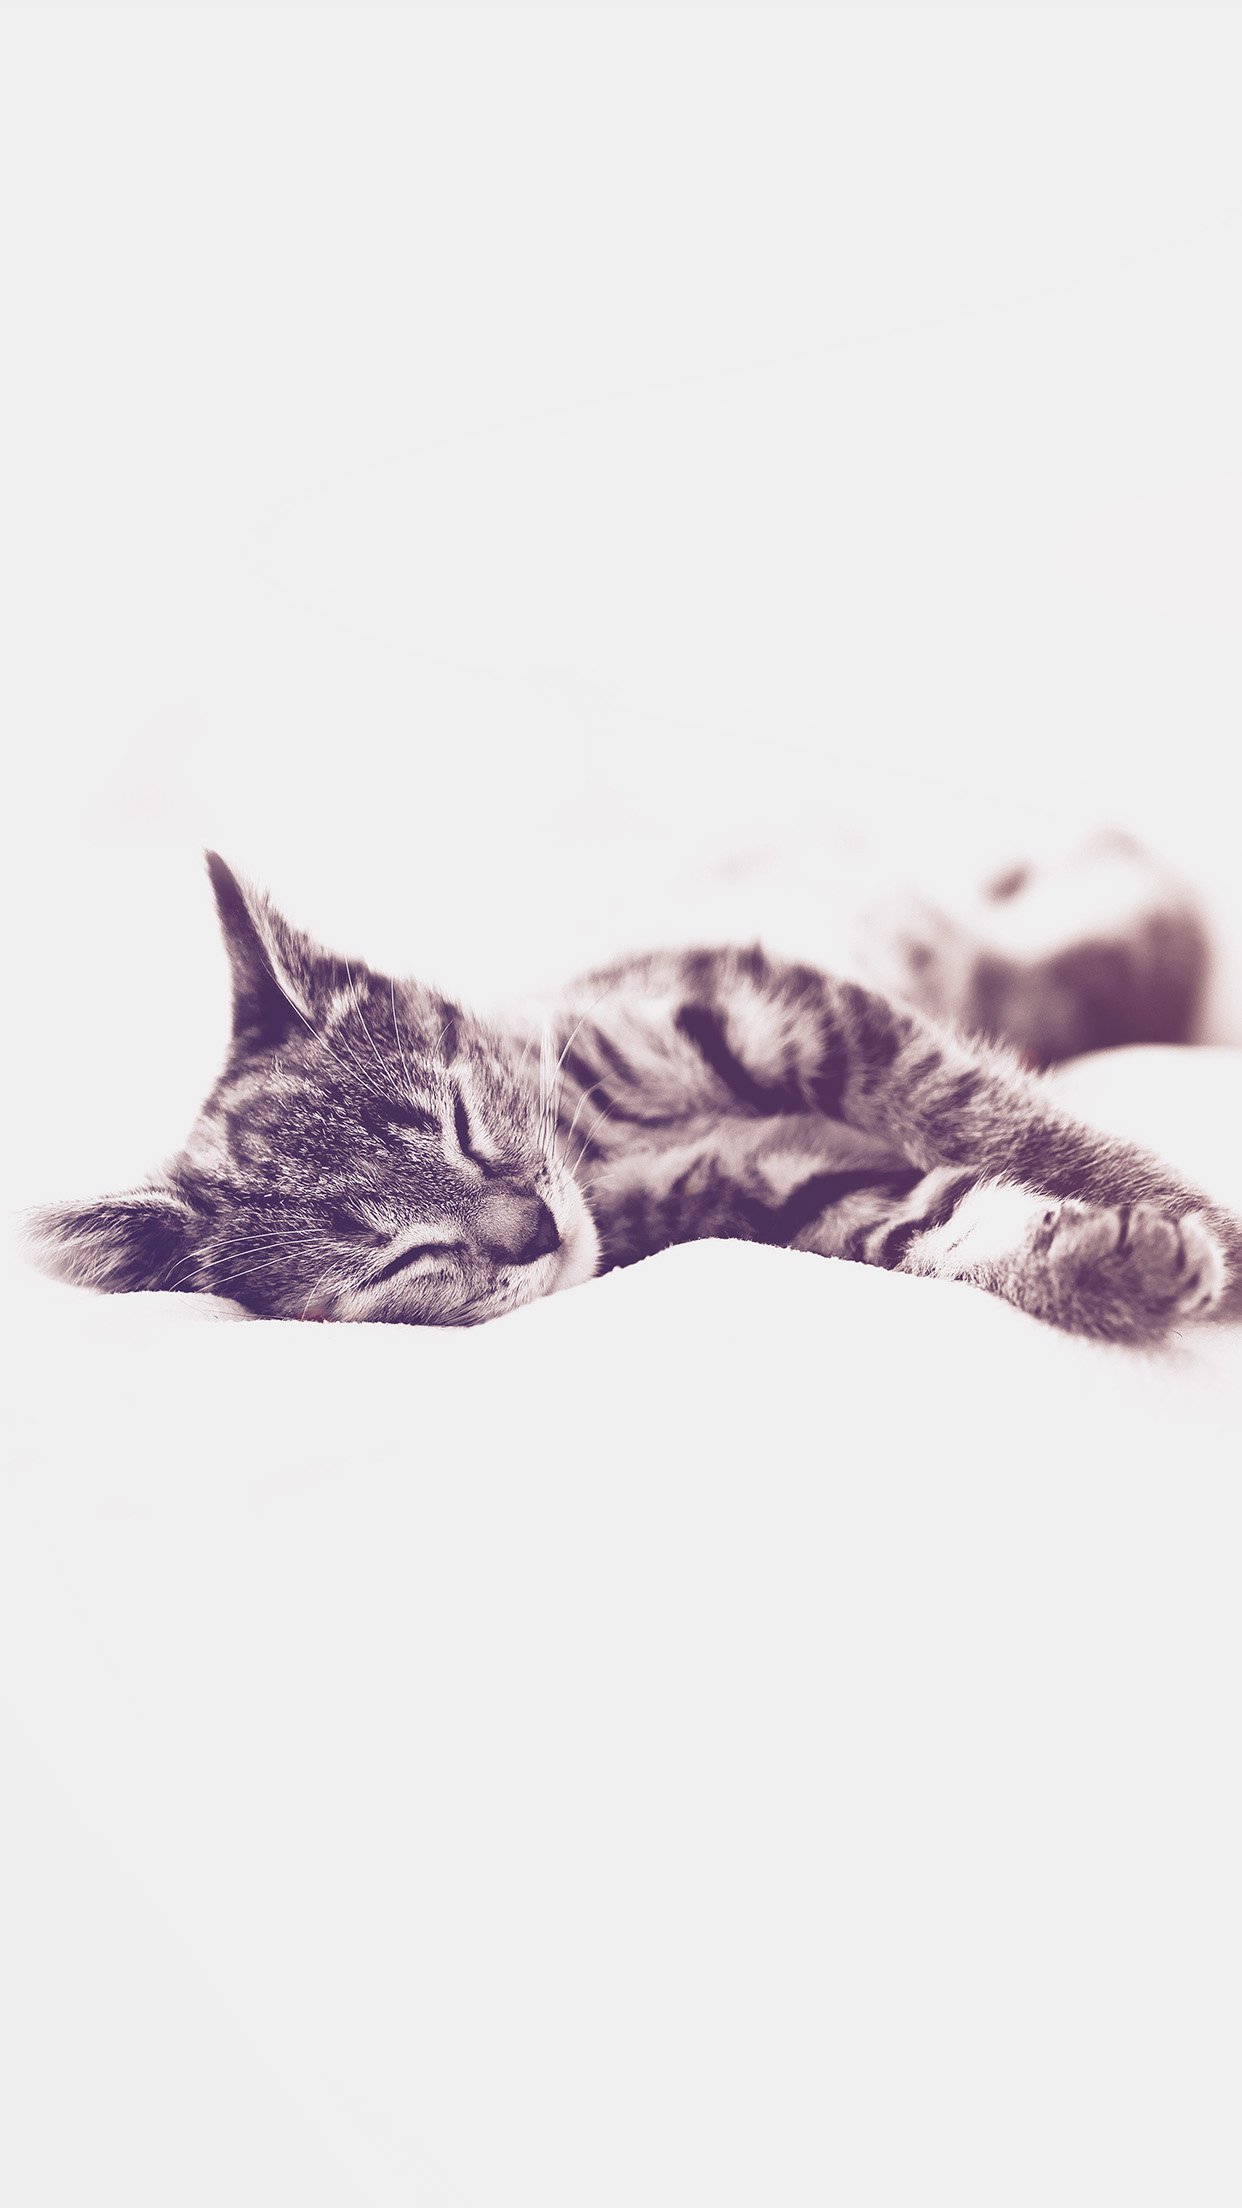 Sleepy Cat Kitten White Animal Blue Android wallpaper